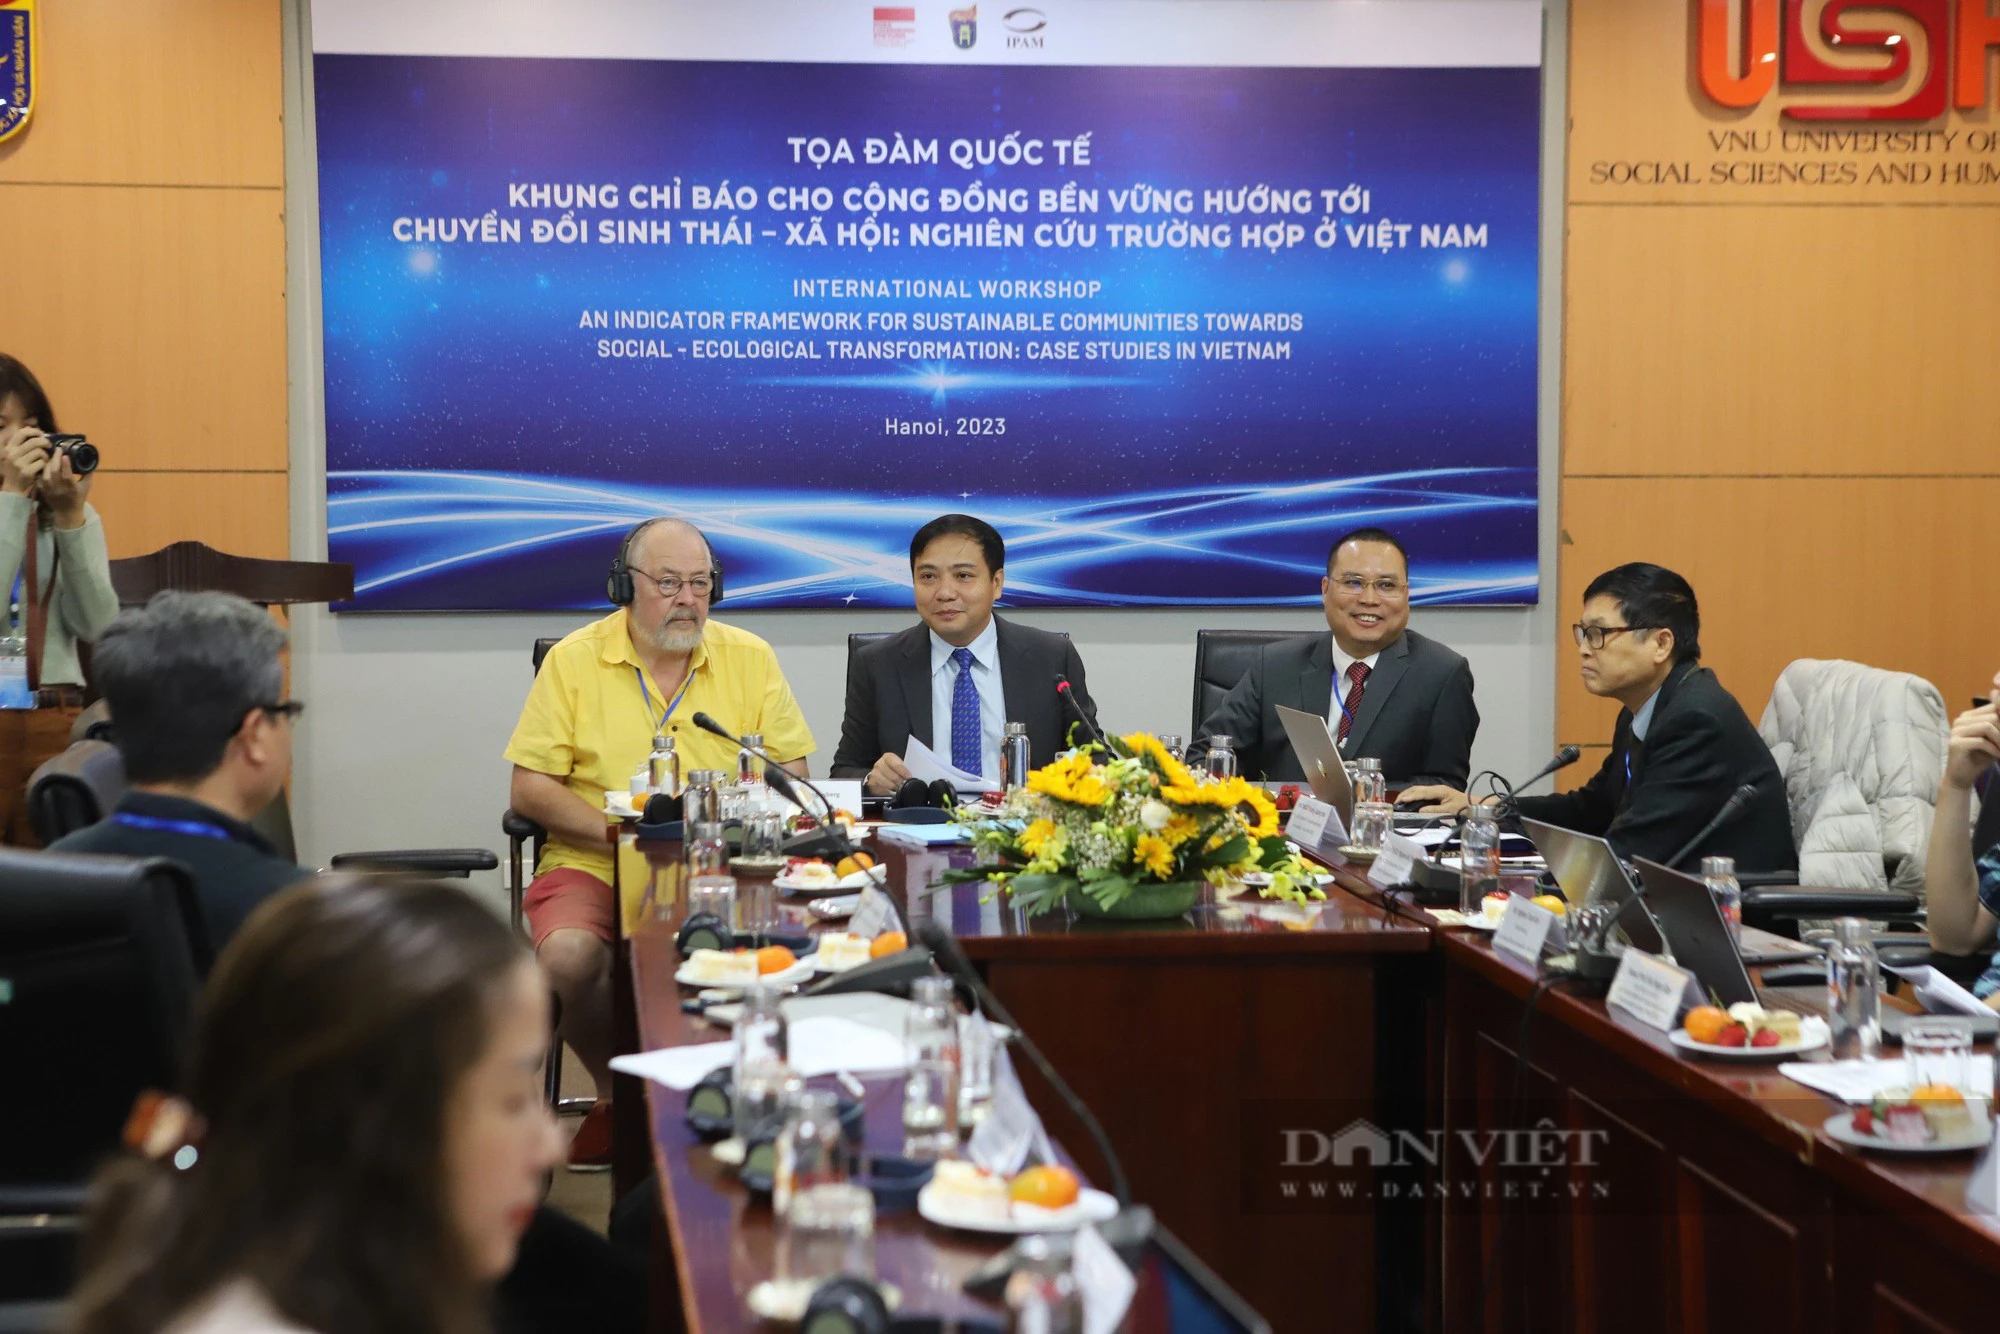 Chuyển đổi sinh thái - xã hội bảo đảm sự phát triển bền vững ở Việt Nam - Ảnh 1.